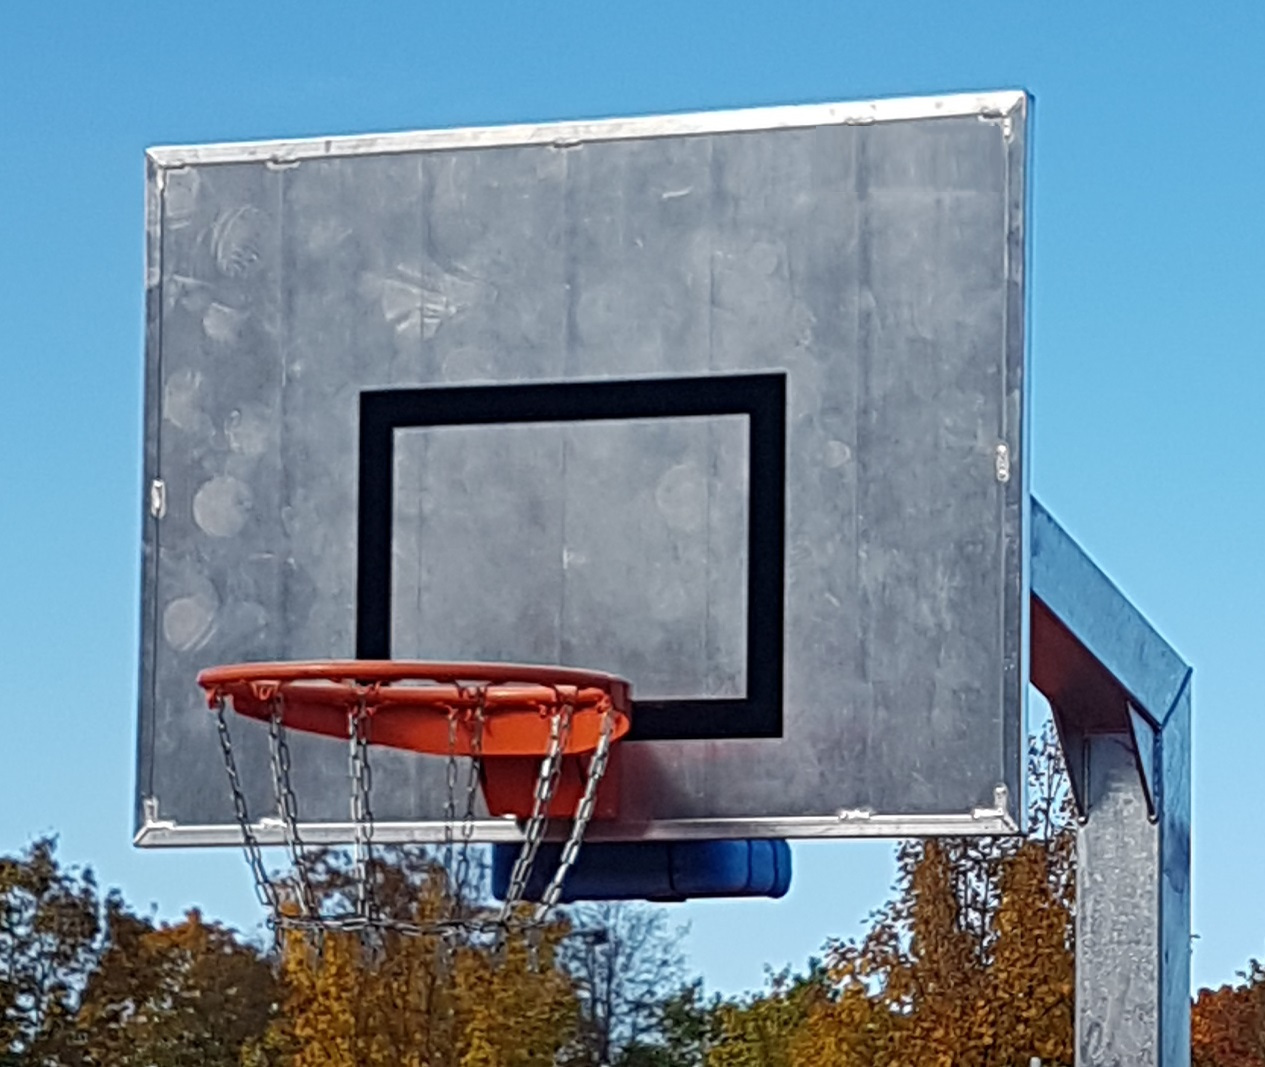 Basketball-Zielbrett aus Aluminium mit Schalldämmung, Größe 1,80 x 1,05 m